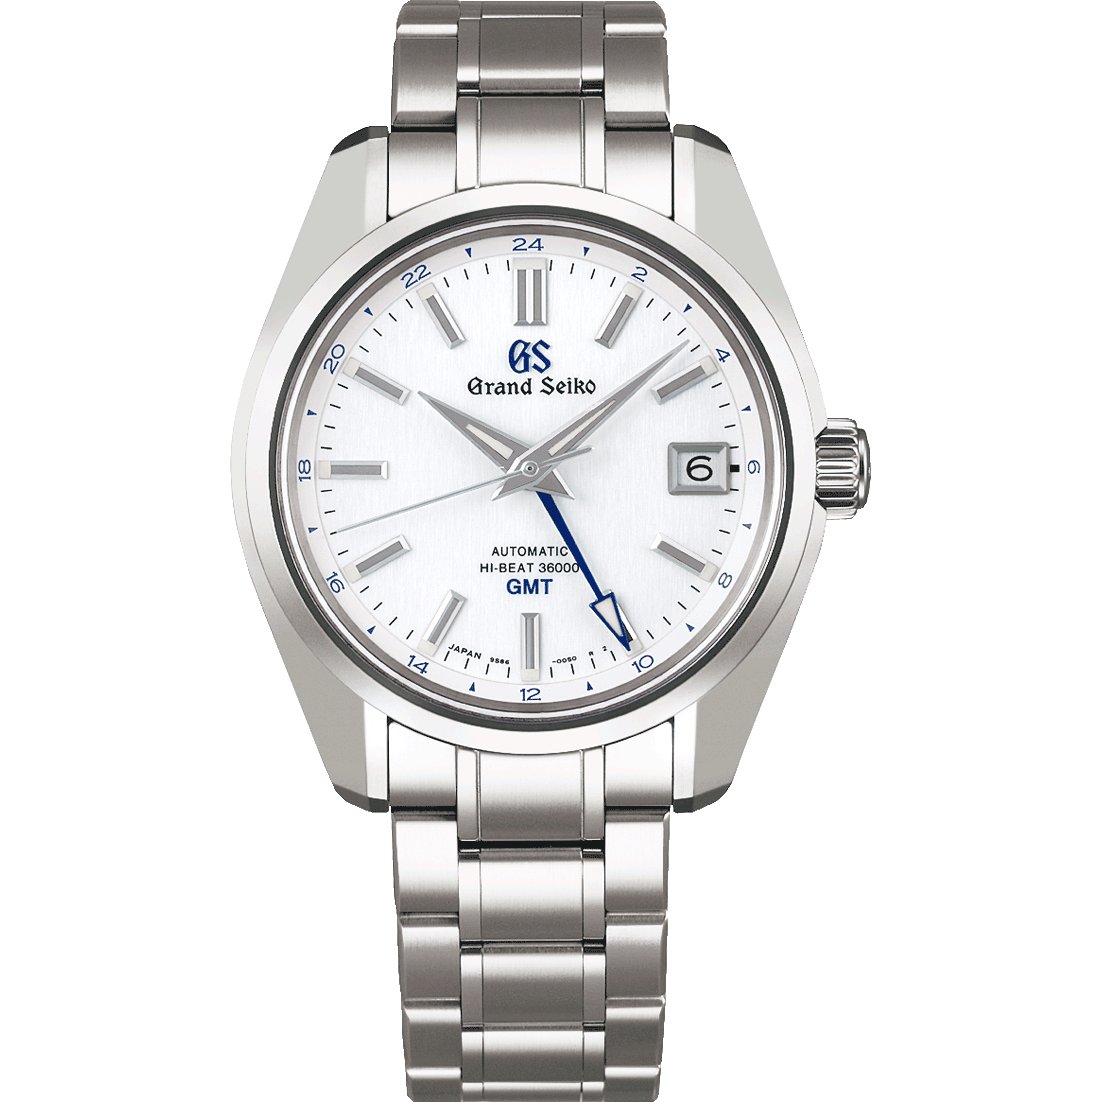 Grand Seiko SBGJ255 white dial GMT watch